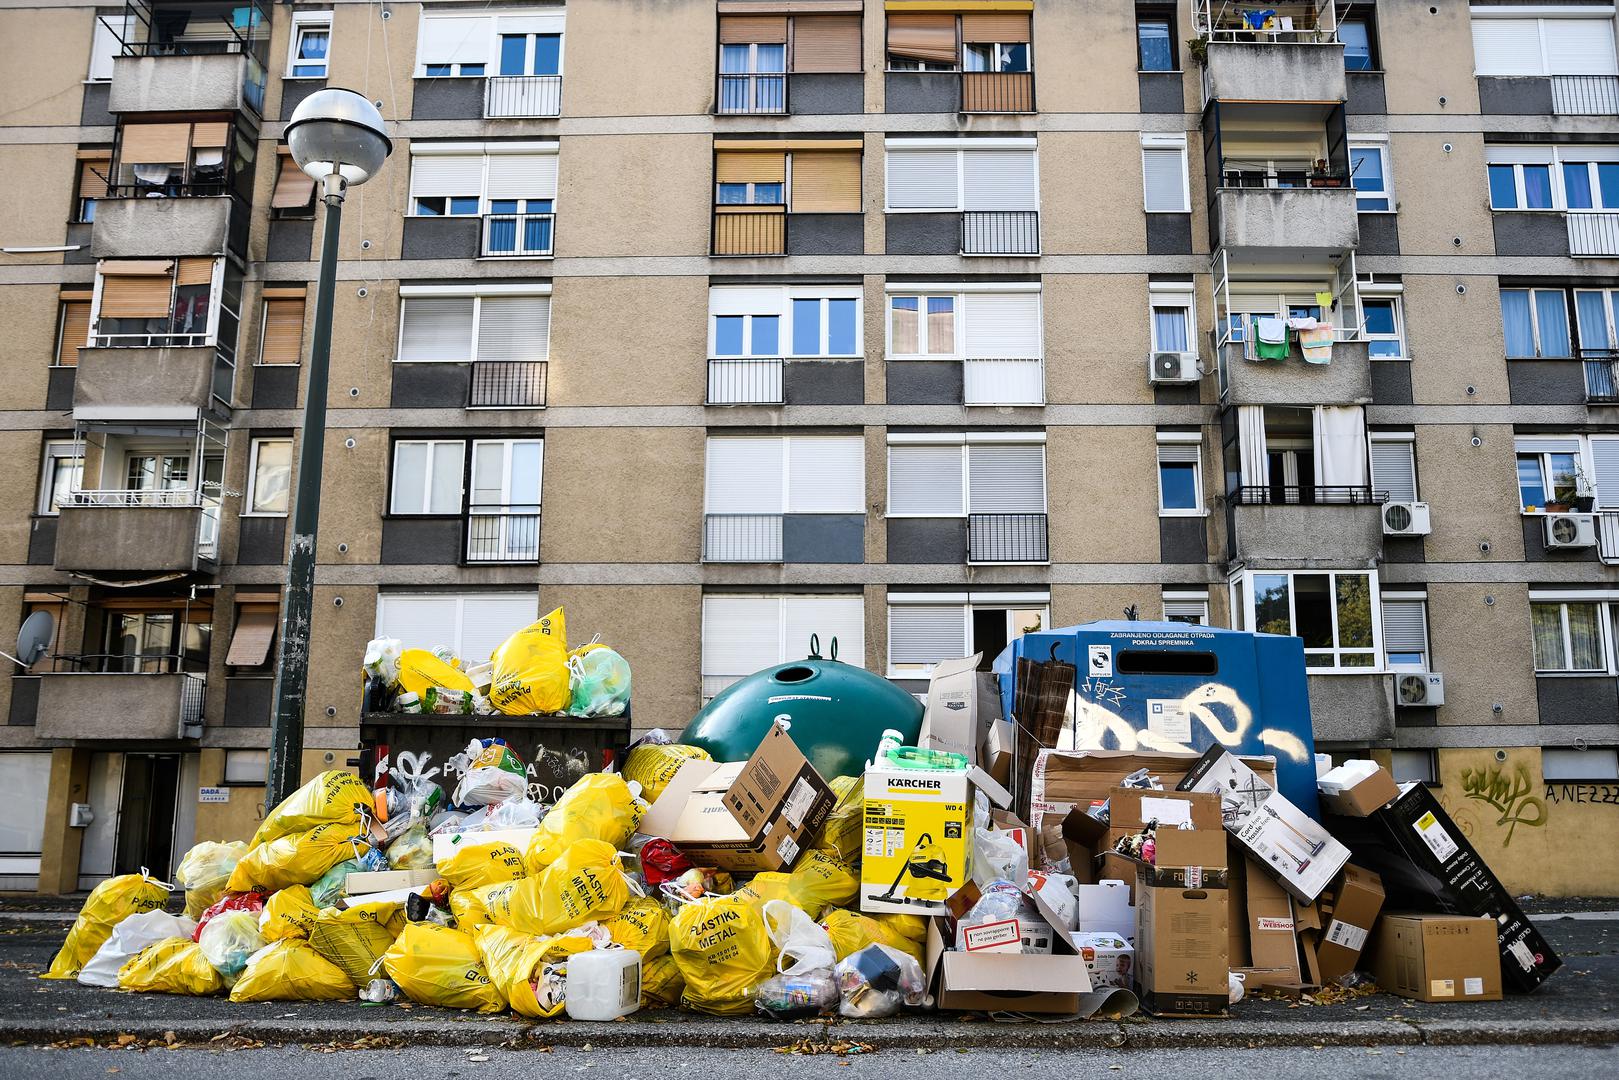 Mnogi zagrebački kvartovi zatrpani su smećem, a današnje fotografije iz Knežije govore koliko je problem zapravo velik.